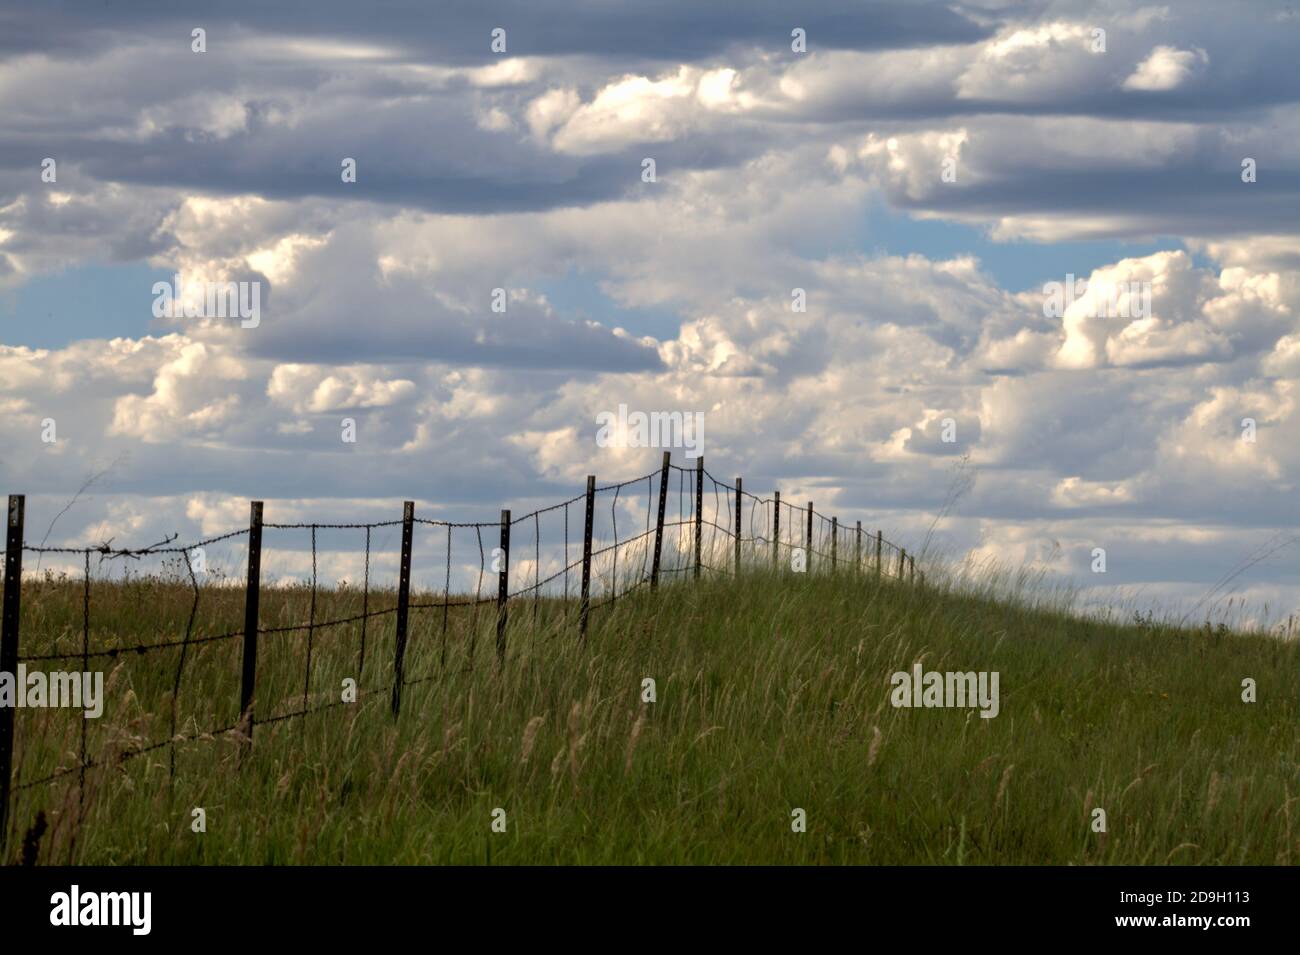 In una giornata estiva, le nuvole di cumulo illuminate brillantemente si accendono su un campo erboso diviso da una recinzione di filo spinato a tre trefoli. Foto Stock